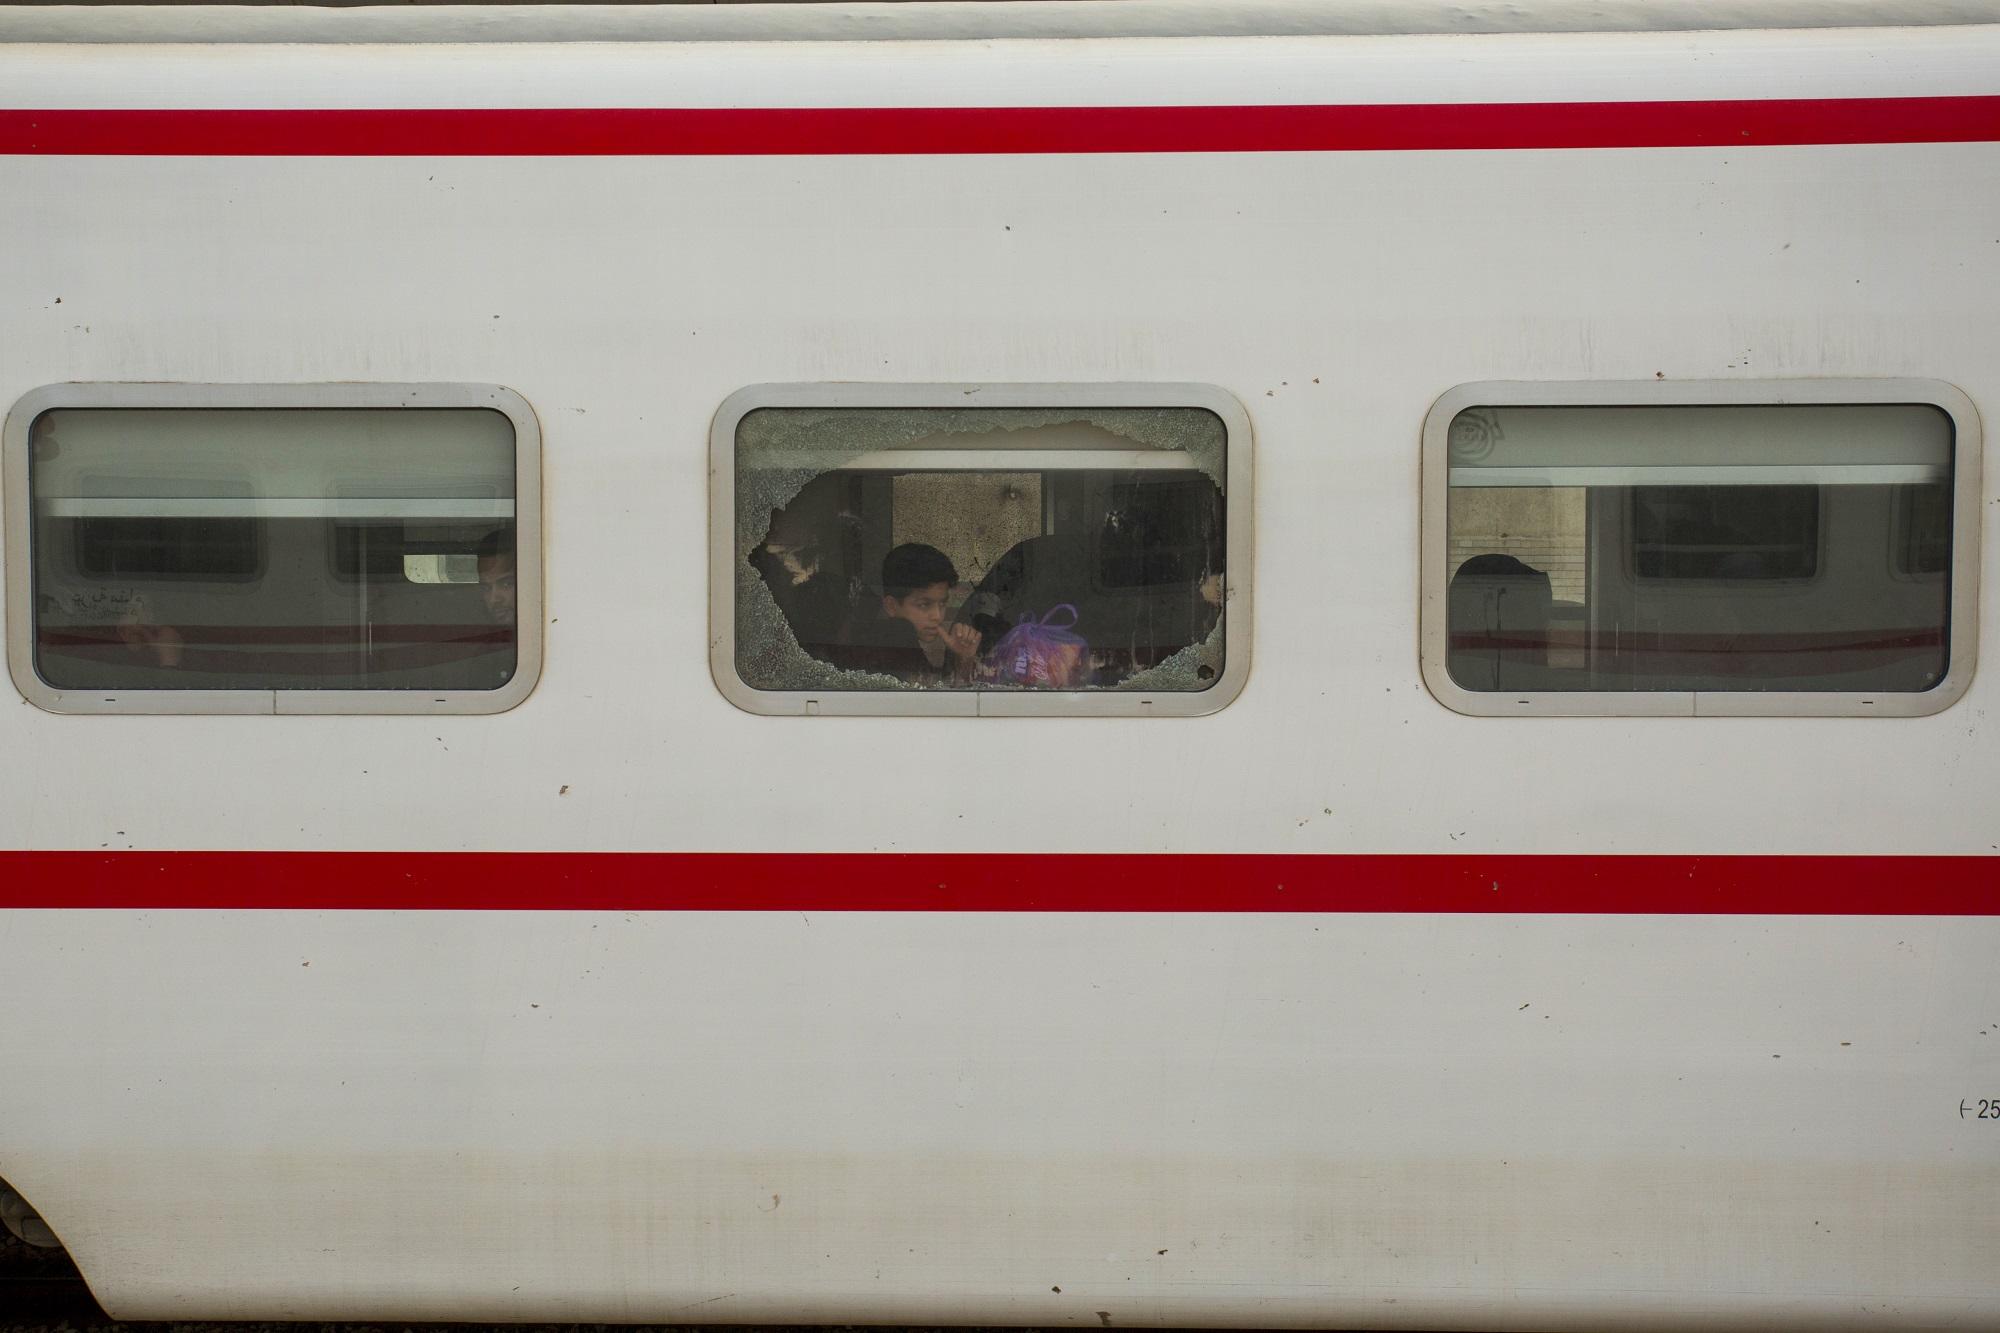 عراقيون من الطائفة الشيعية يجلسون في قطار في مدينة البصرة جنوبي العراق في طريقهم نحو مدينة كربلاء. حسين فالح. 17 أكتوبر 2019. / أ ف ب